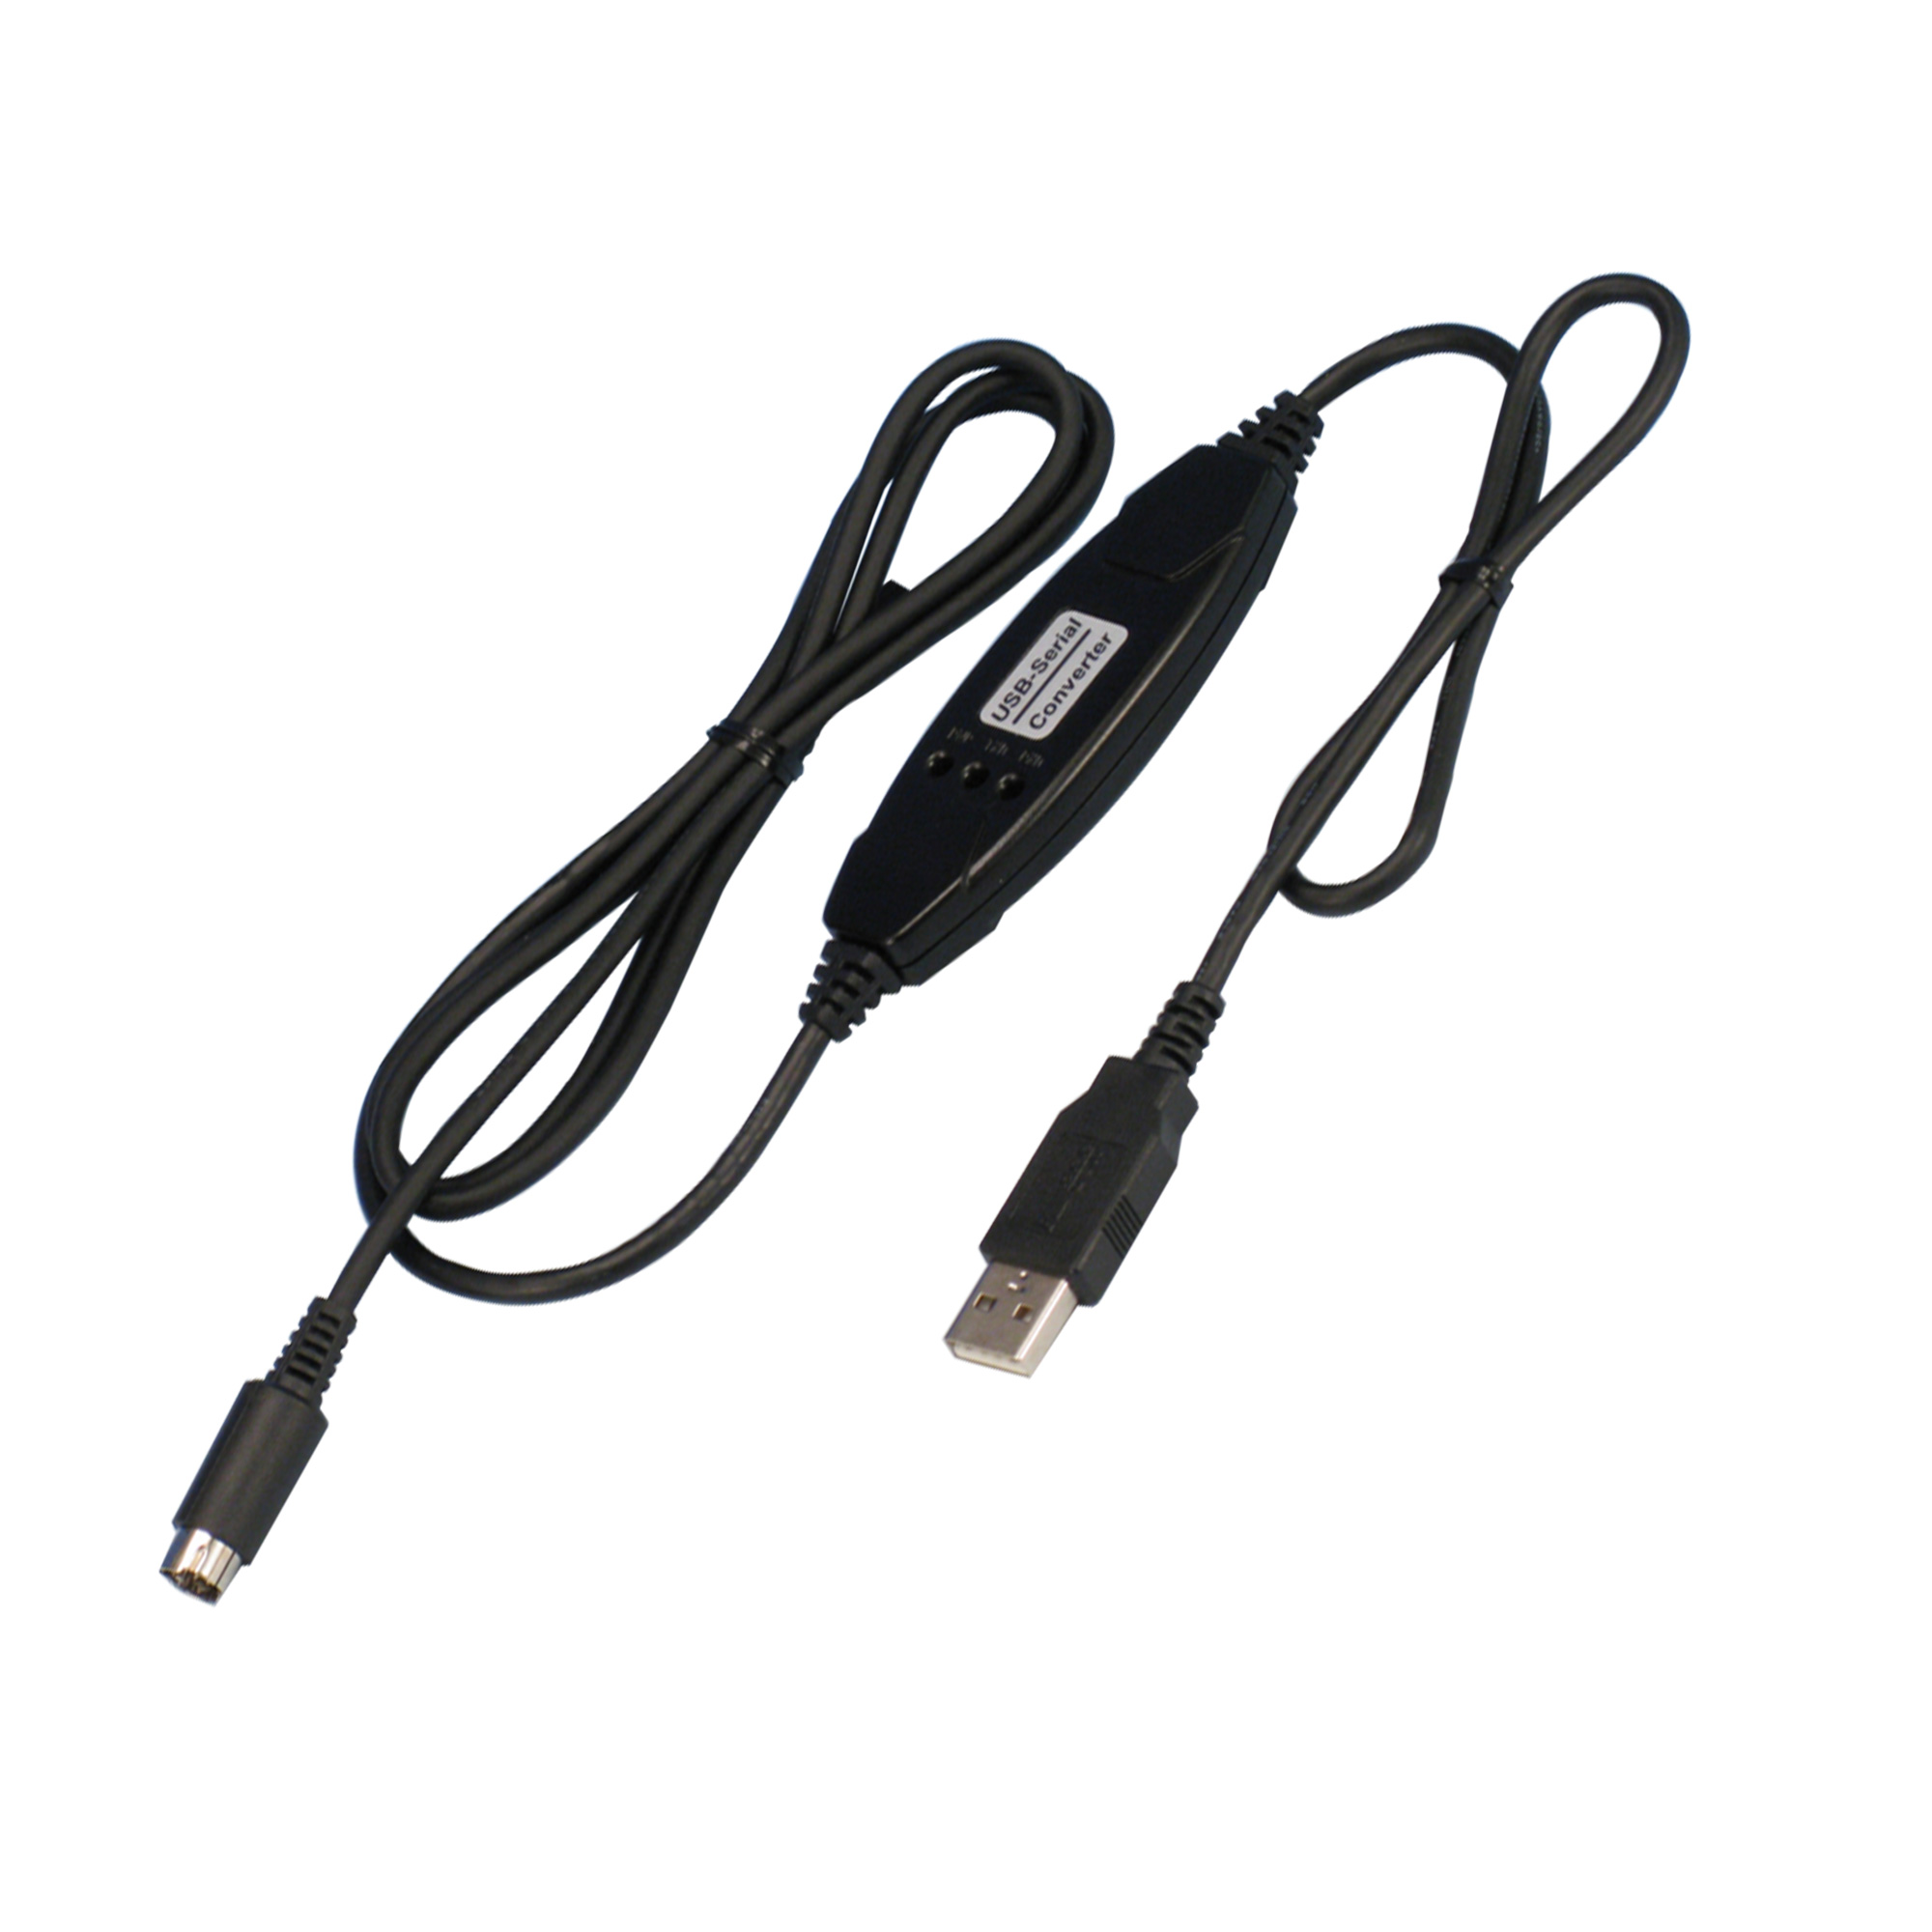 080000-415 ソフト付通信ケーブル S-USB 柴田科学(SIBATA)